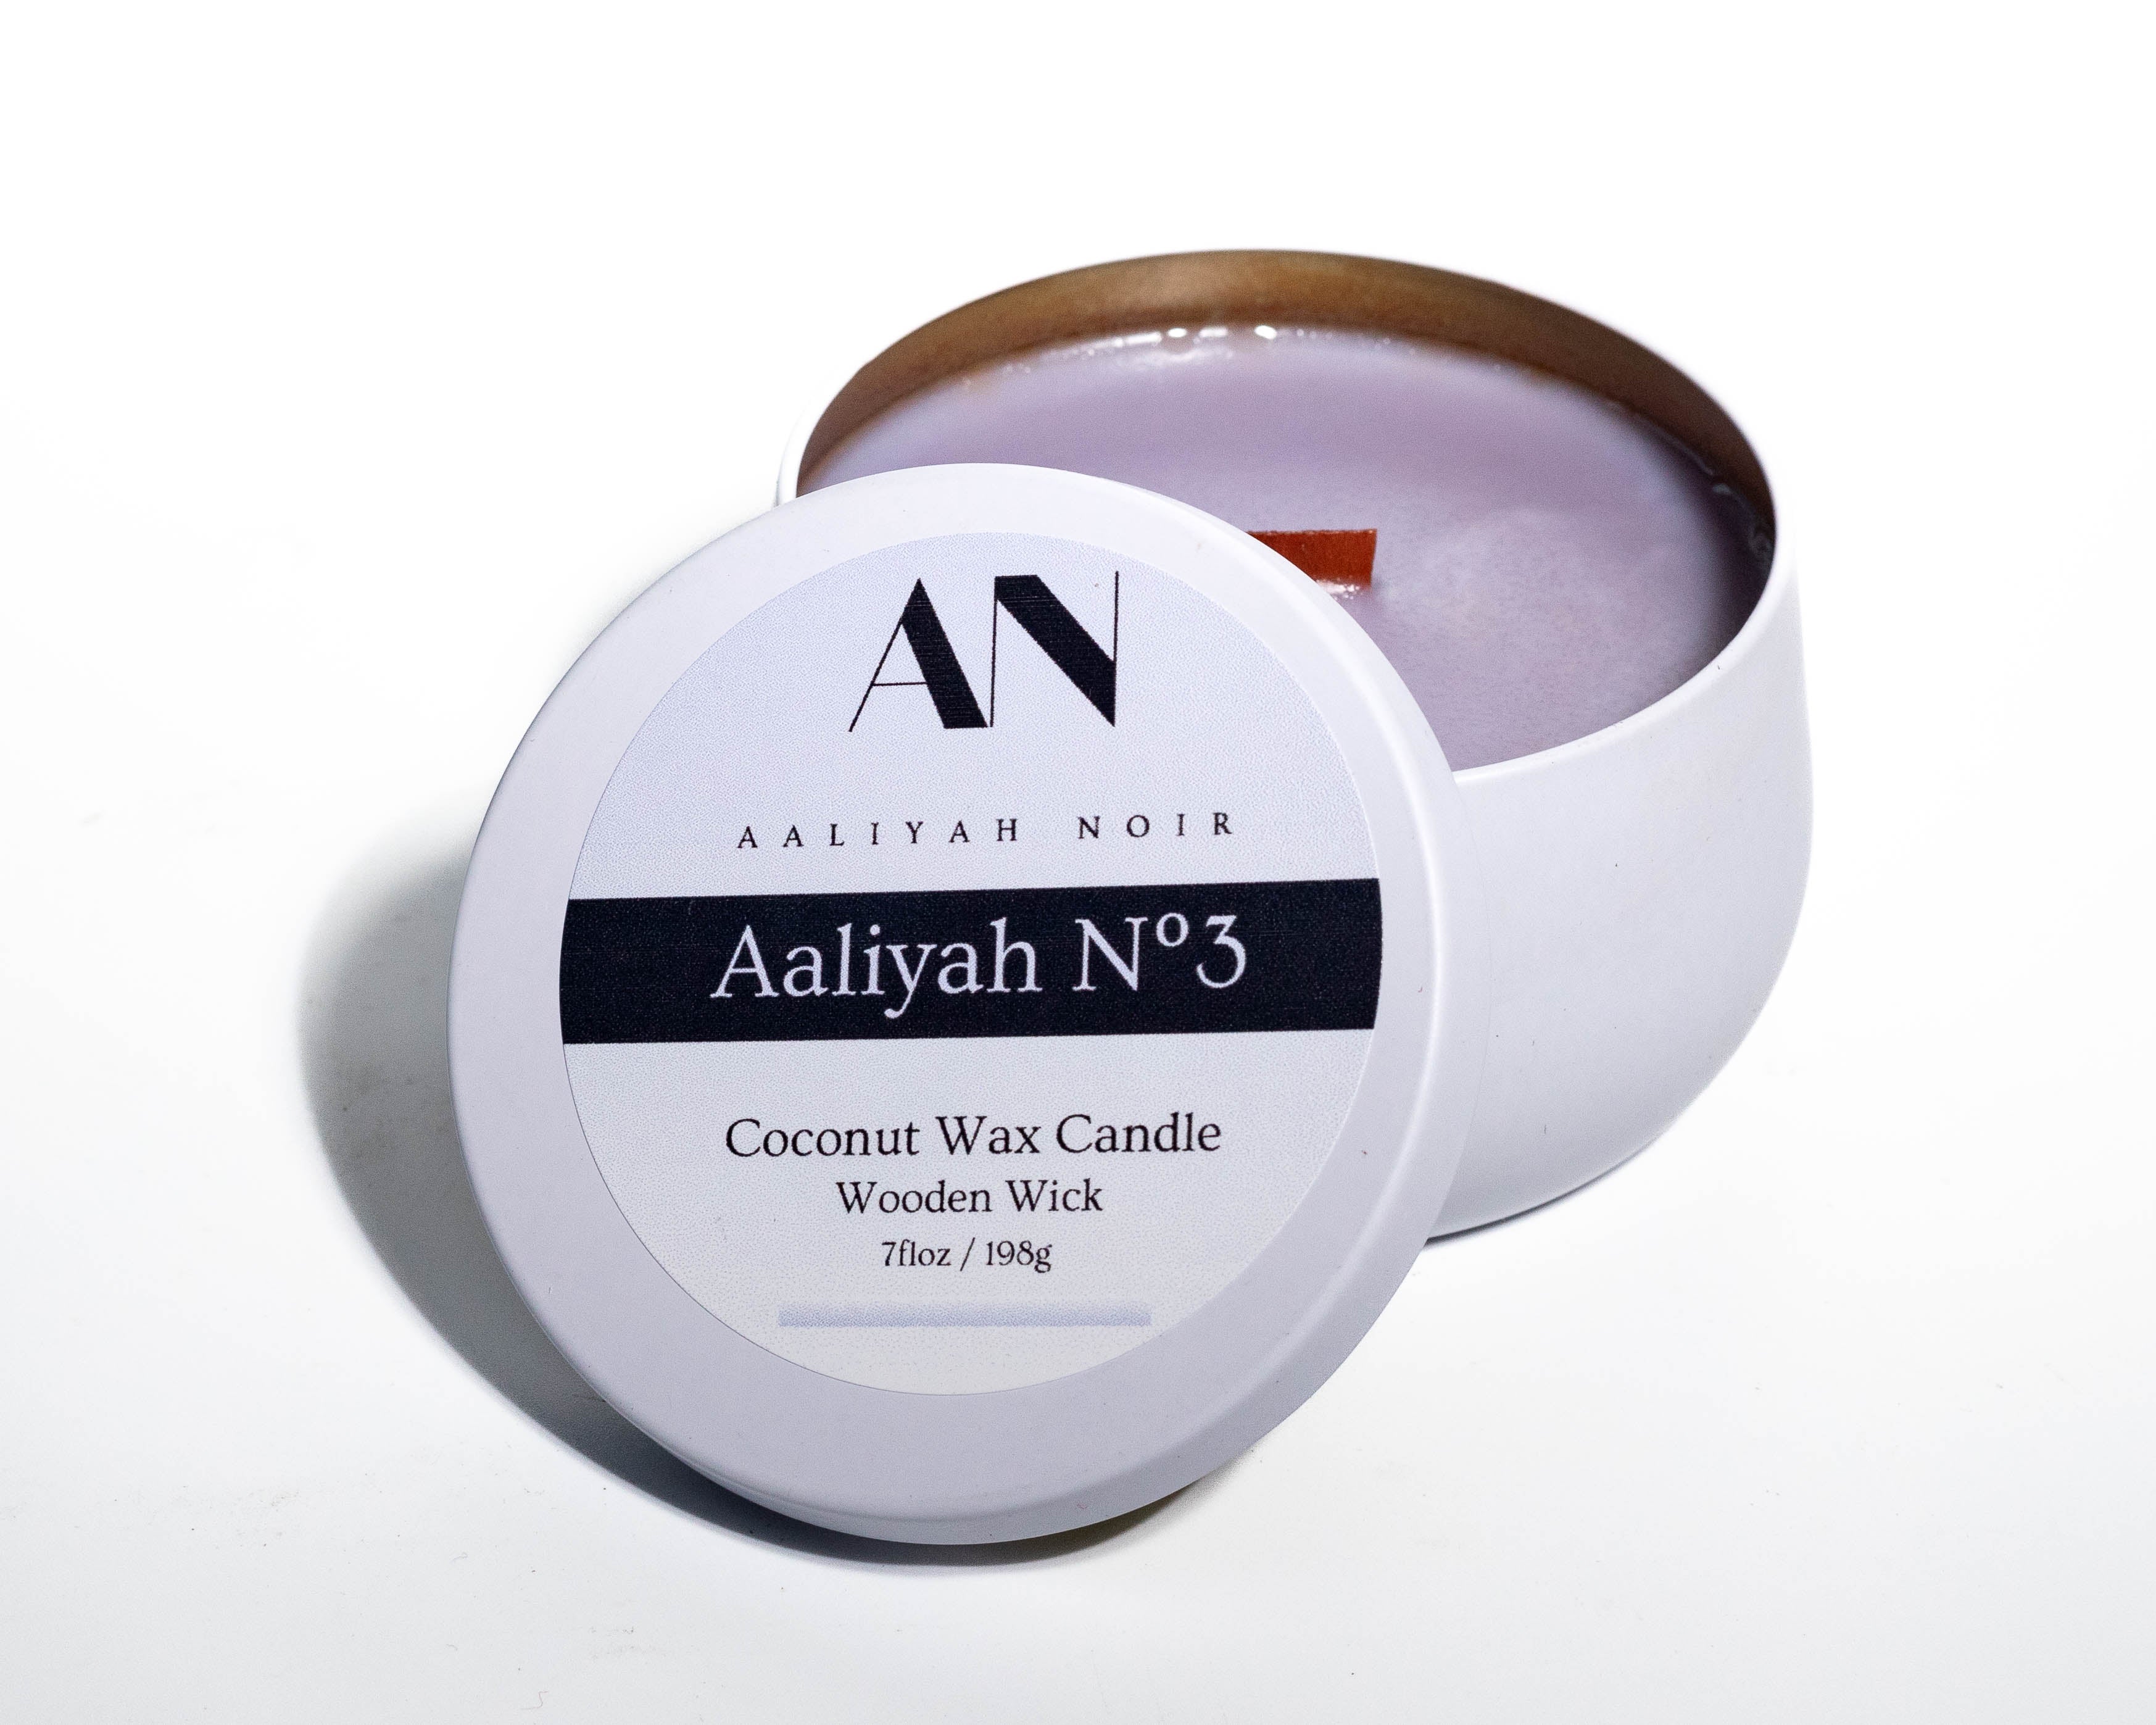 Aaliyah N°3 Exclusive Coconut Wax Candle